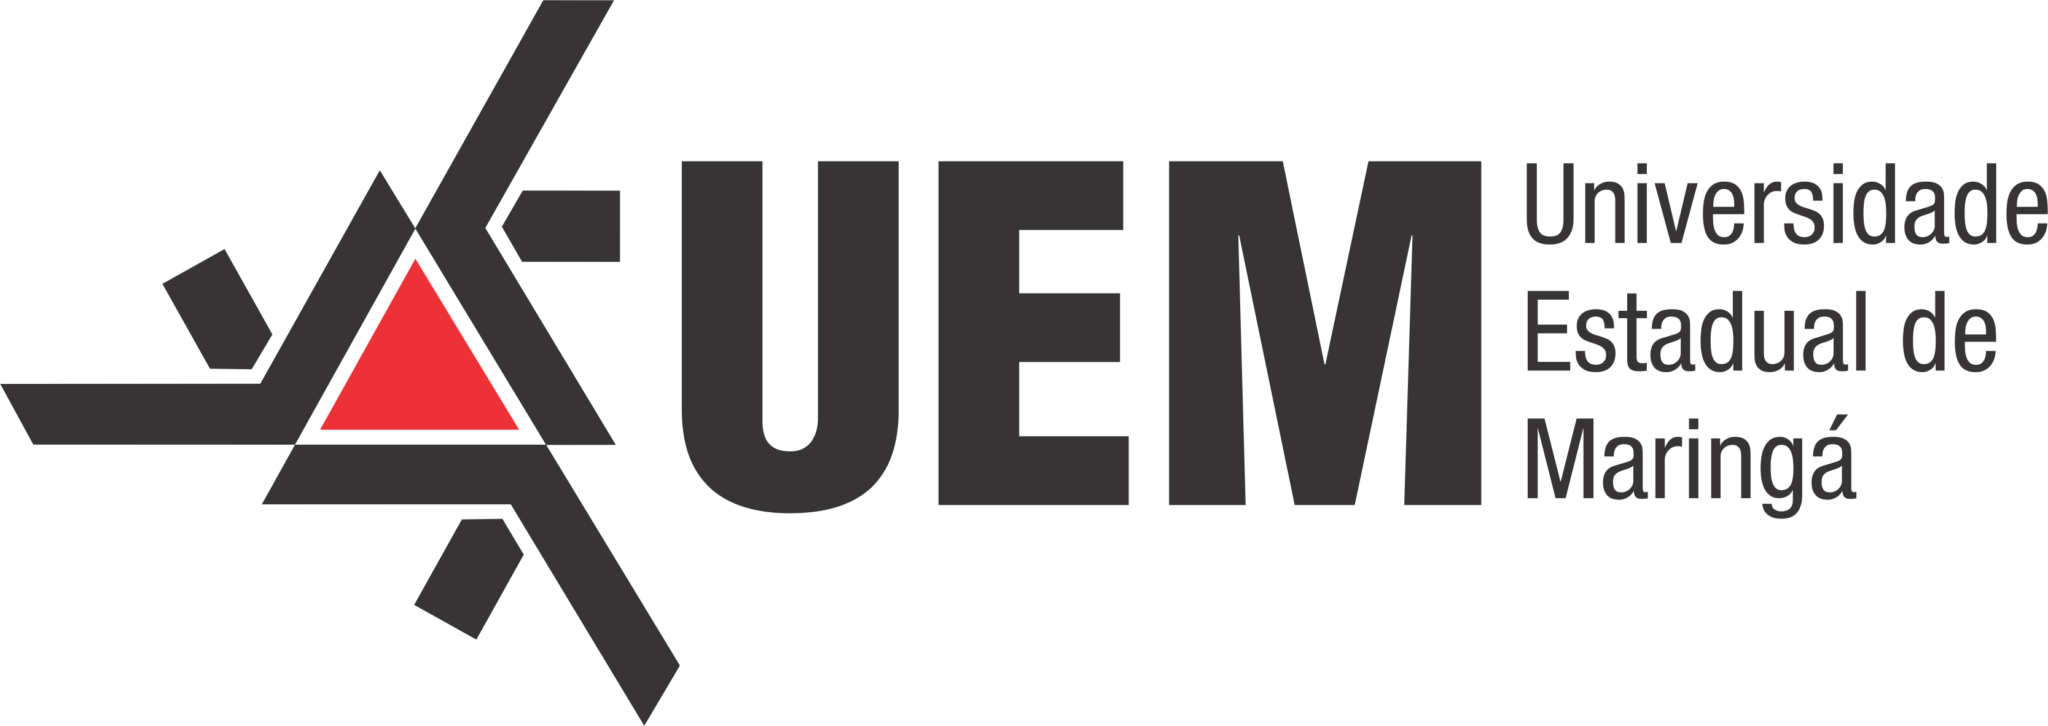 Logo-UEM-Universidade Estadual de Maringa